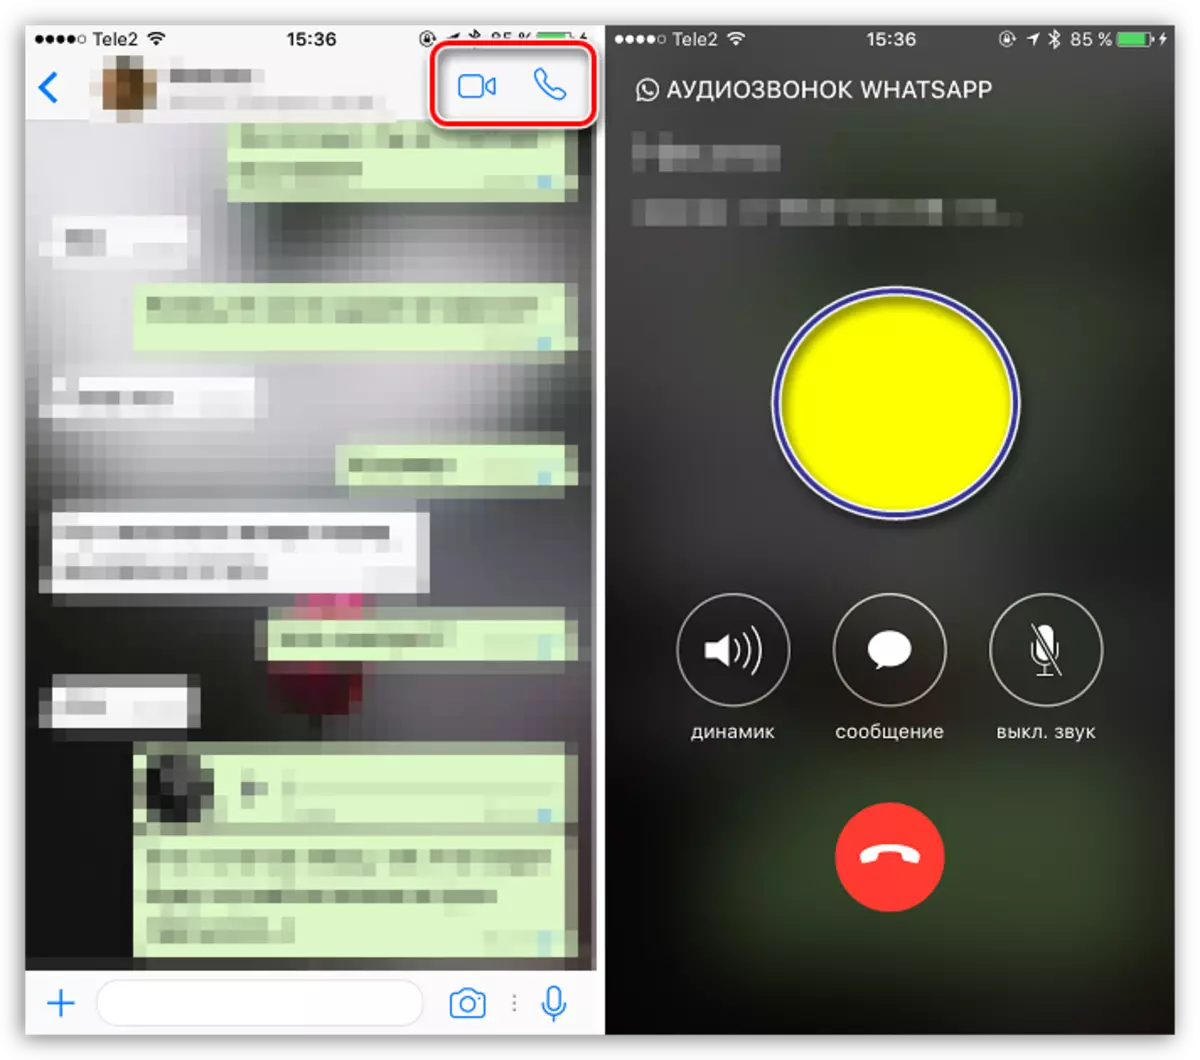 Telpon swara lan telpon video ing whatsapp kanggo iOS